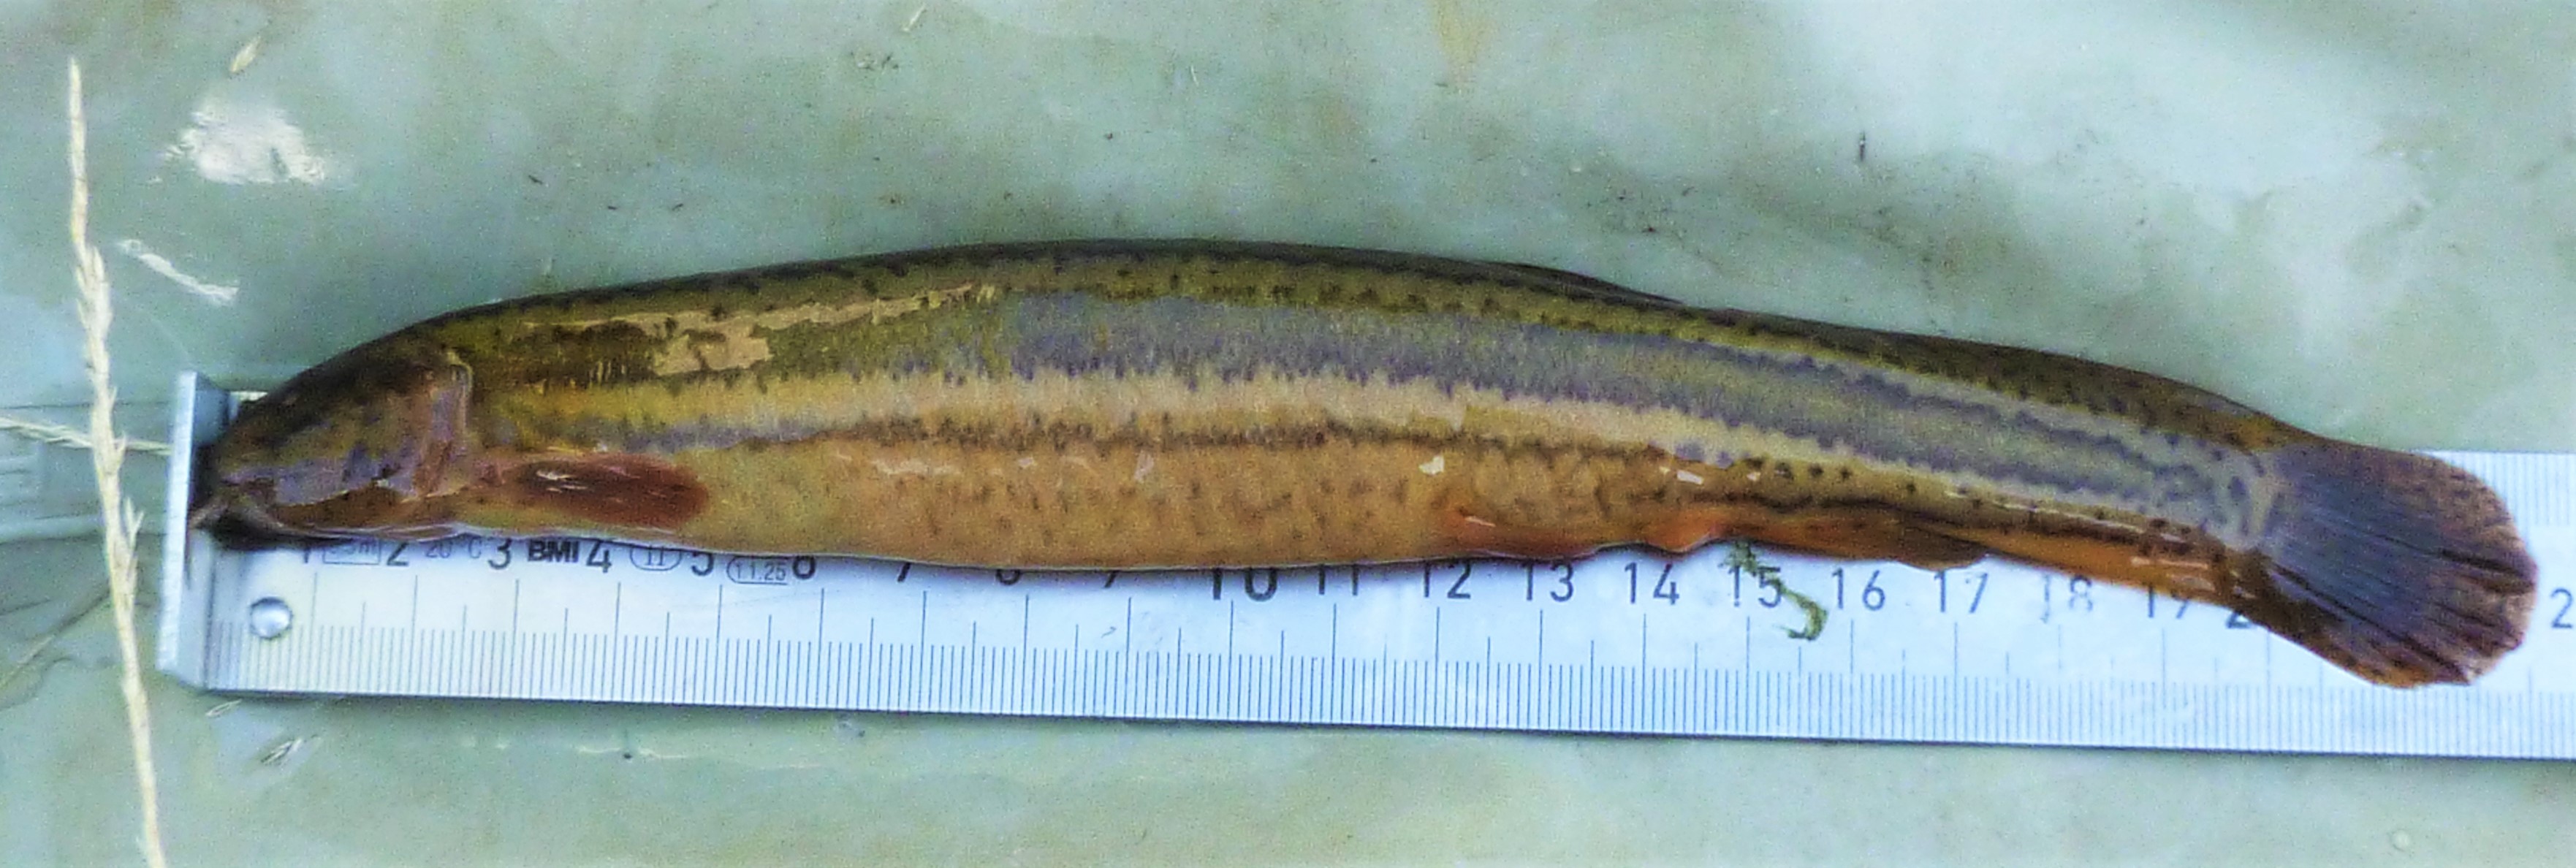 Ryba piskorz długości około 20 cm leżąca na stalowej miarce